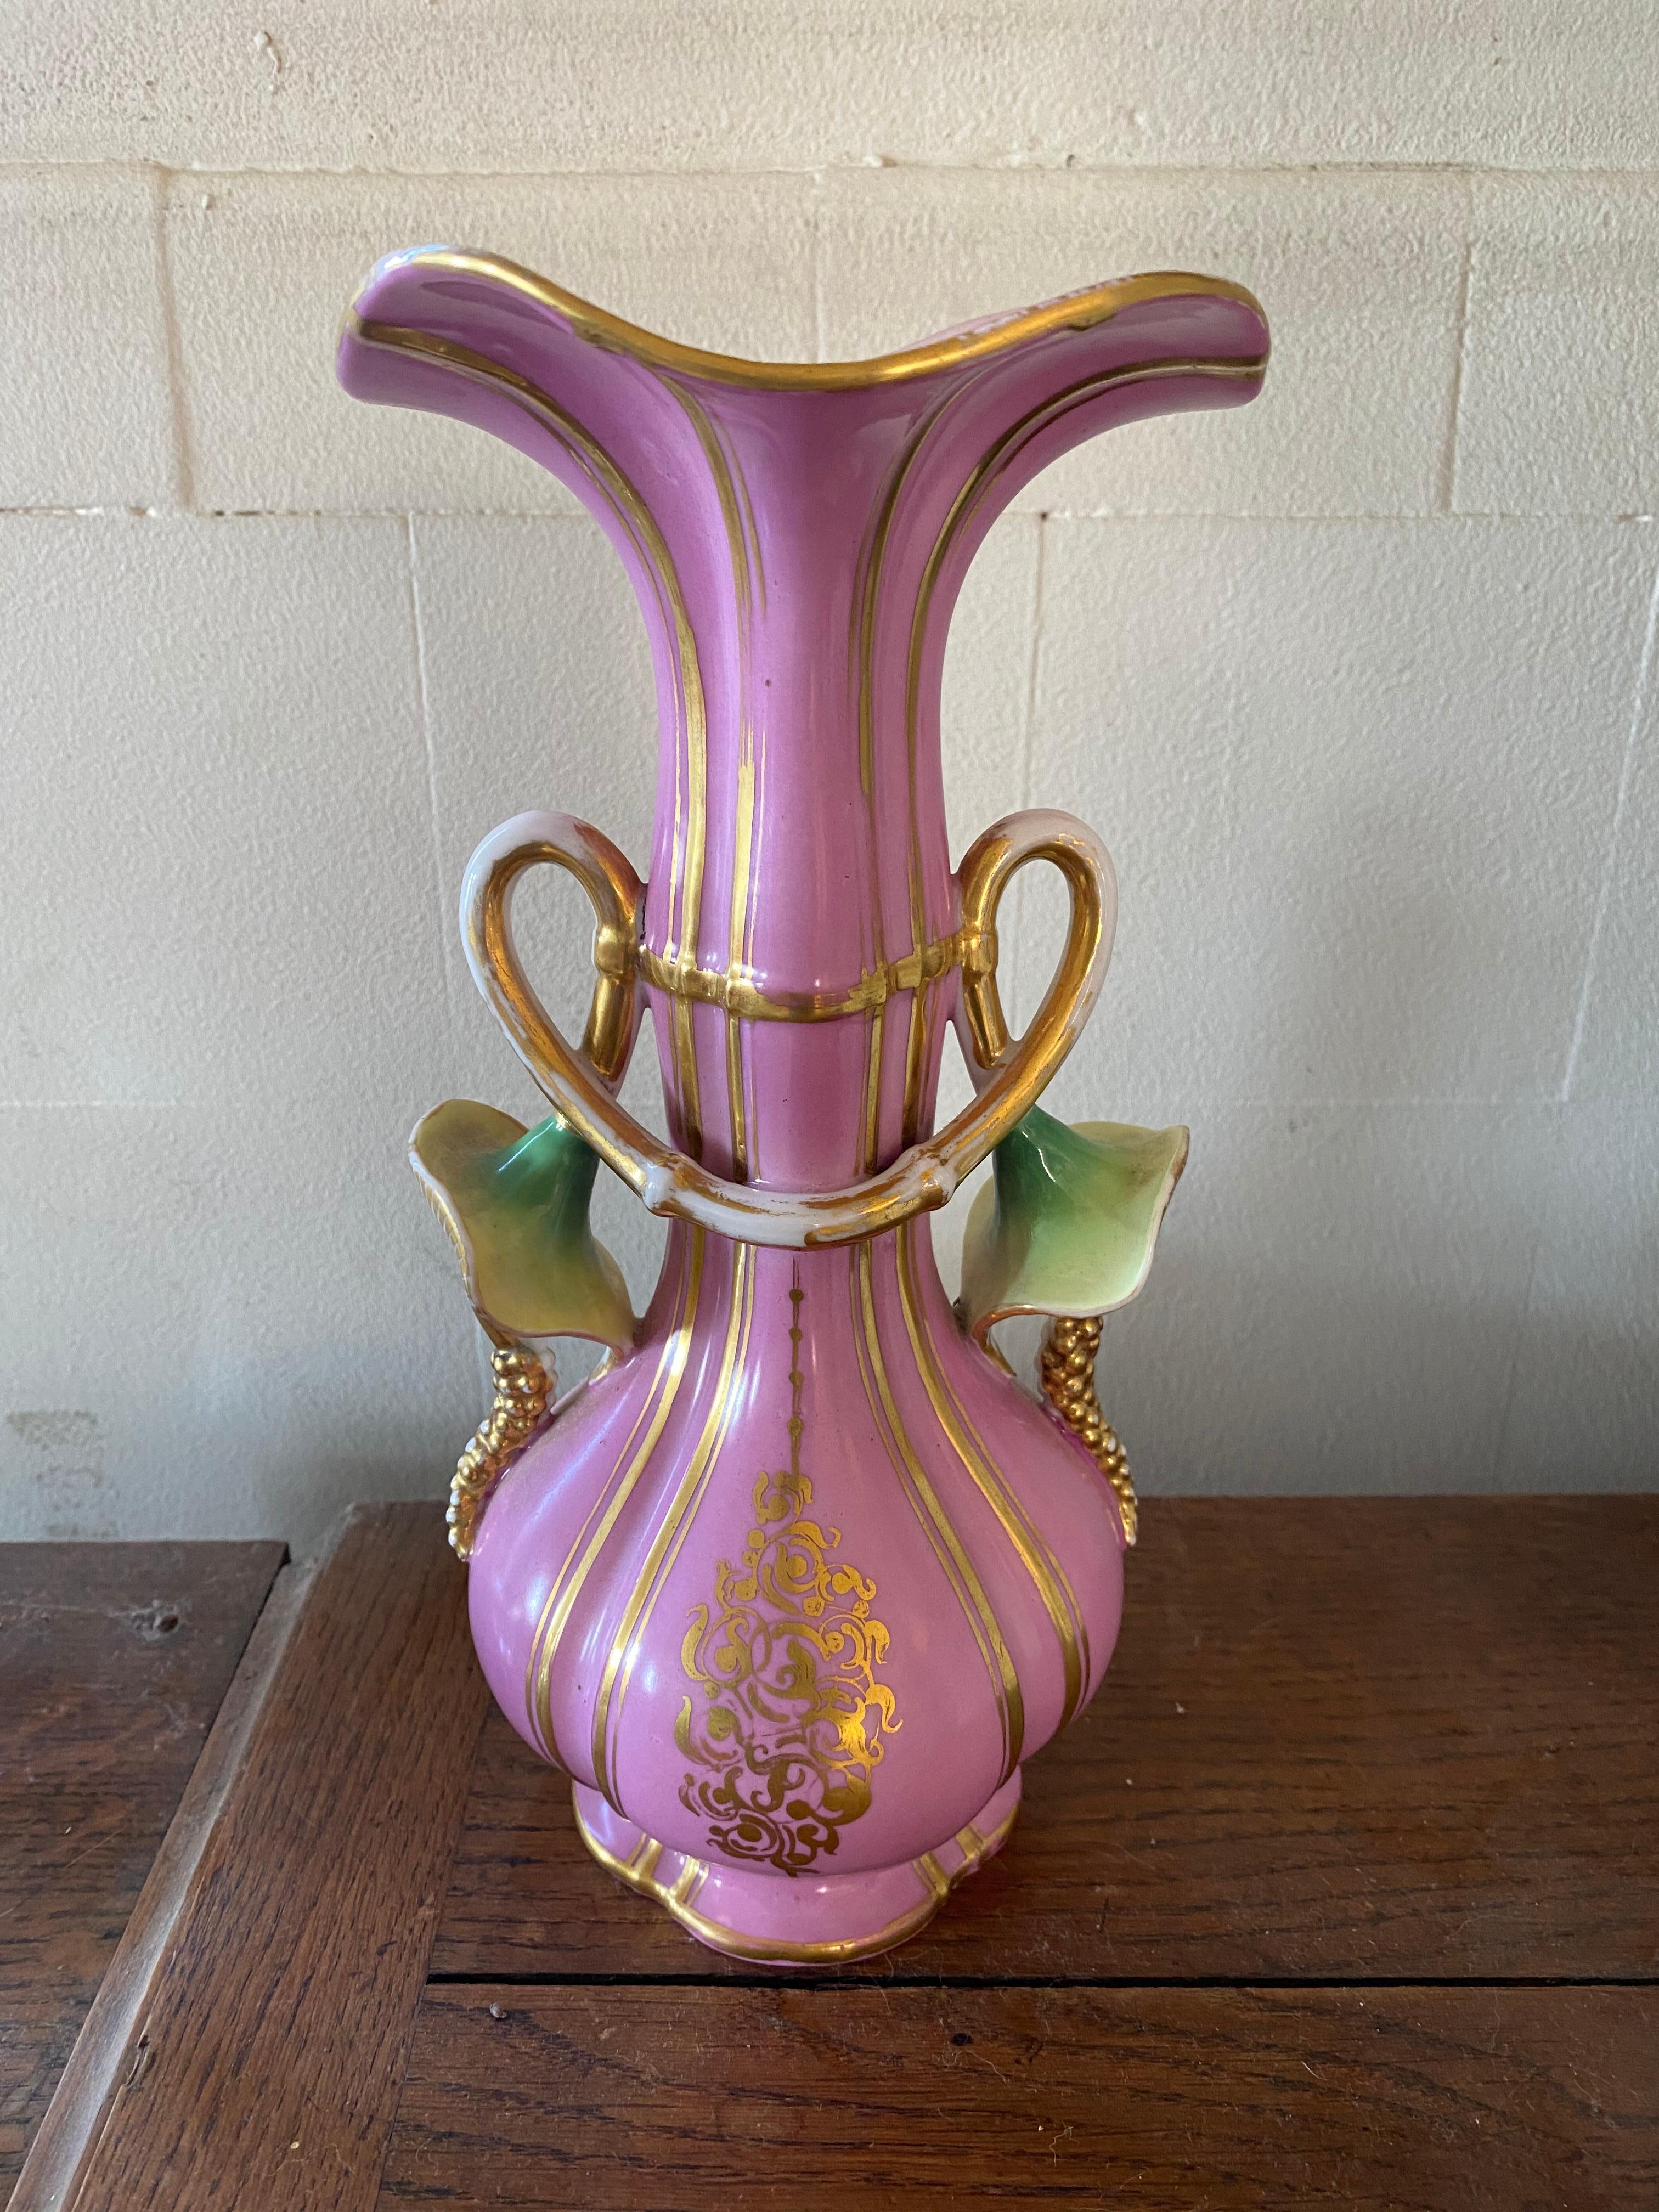 Ceramic vase Napoleon III period.
        